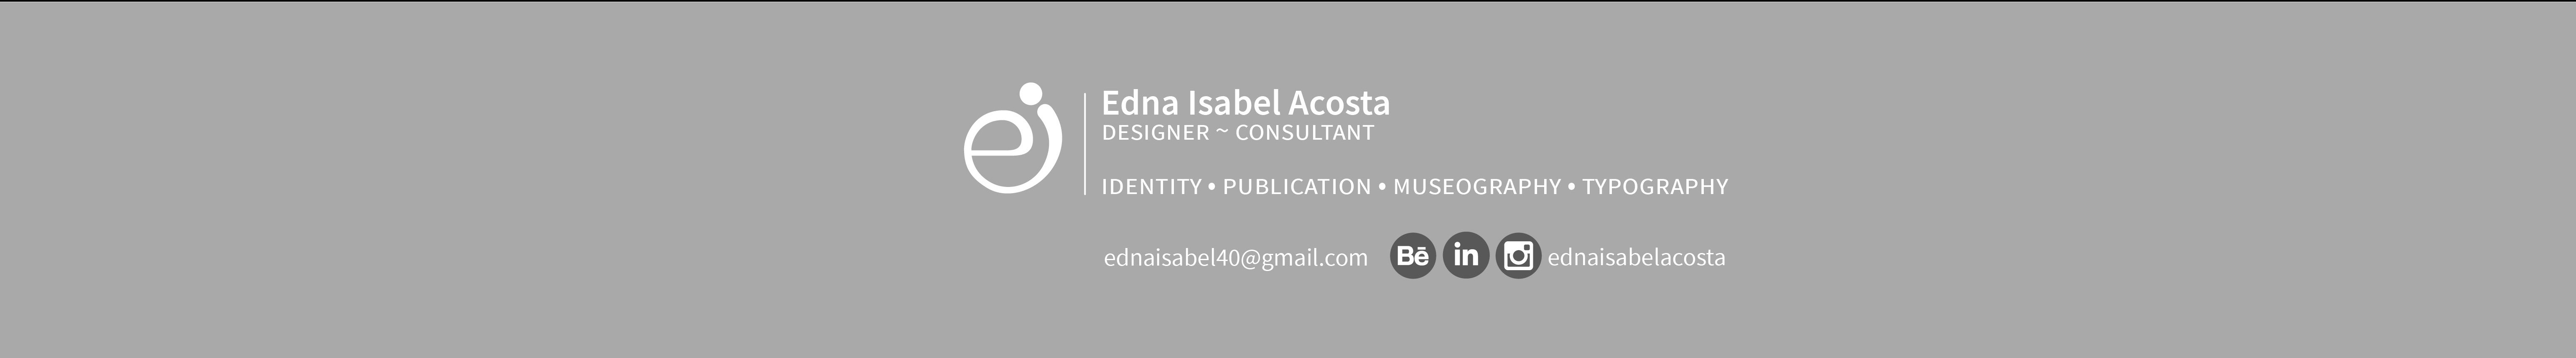 Edna Isabel Acostas profilbanner